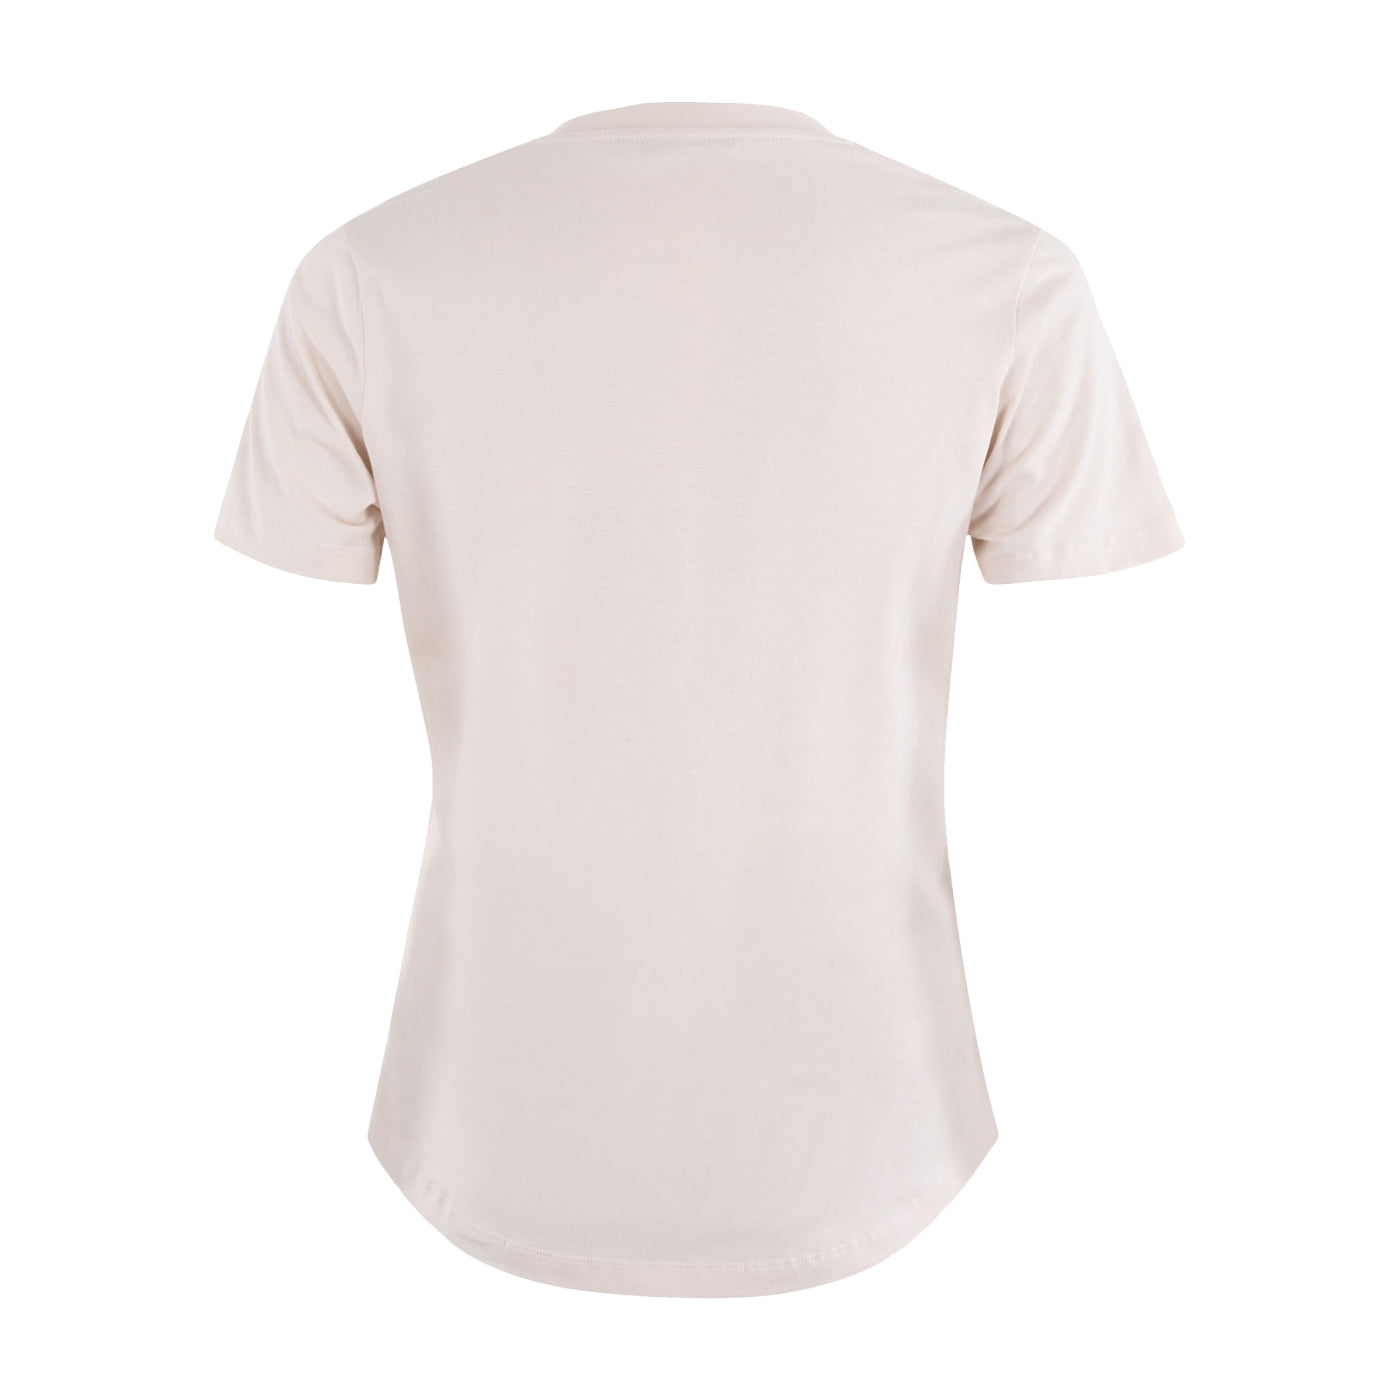 Strauch MSCW günstig Mode sale C. Designer in – beige Mode online kaufen T-Shirt jetzt